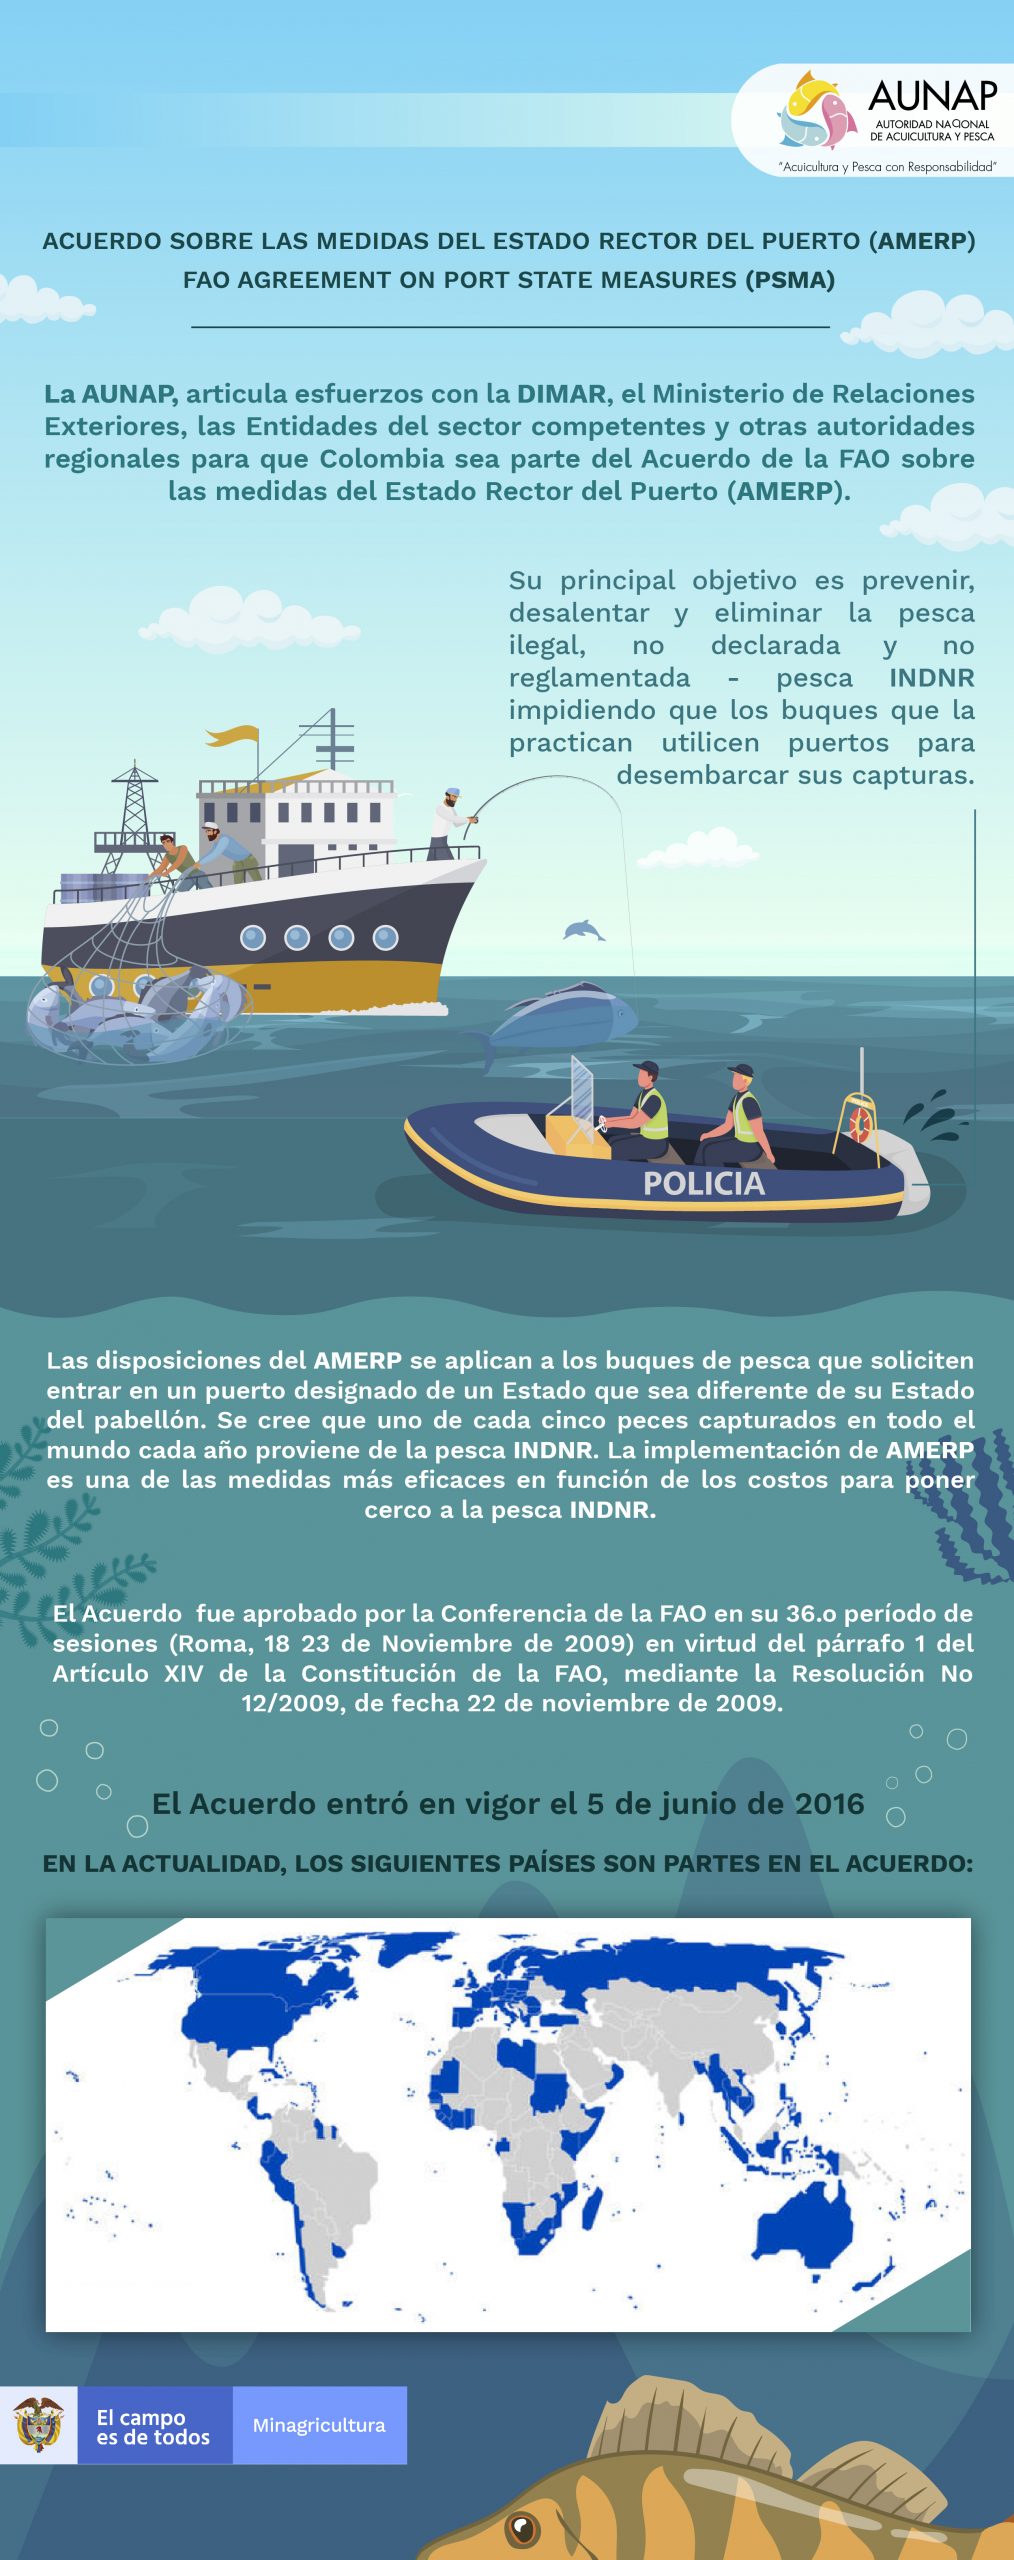 Acuerdo Sobre Medidas del Estado Rector del Puerto (AMERP)